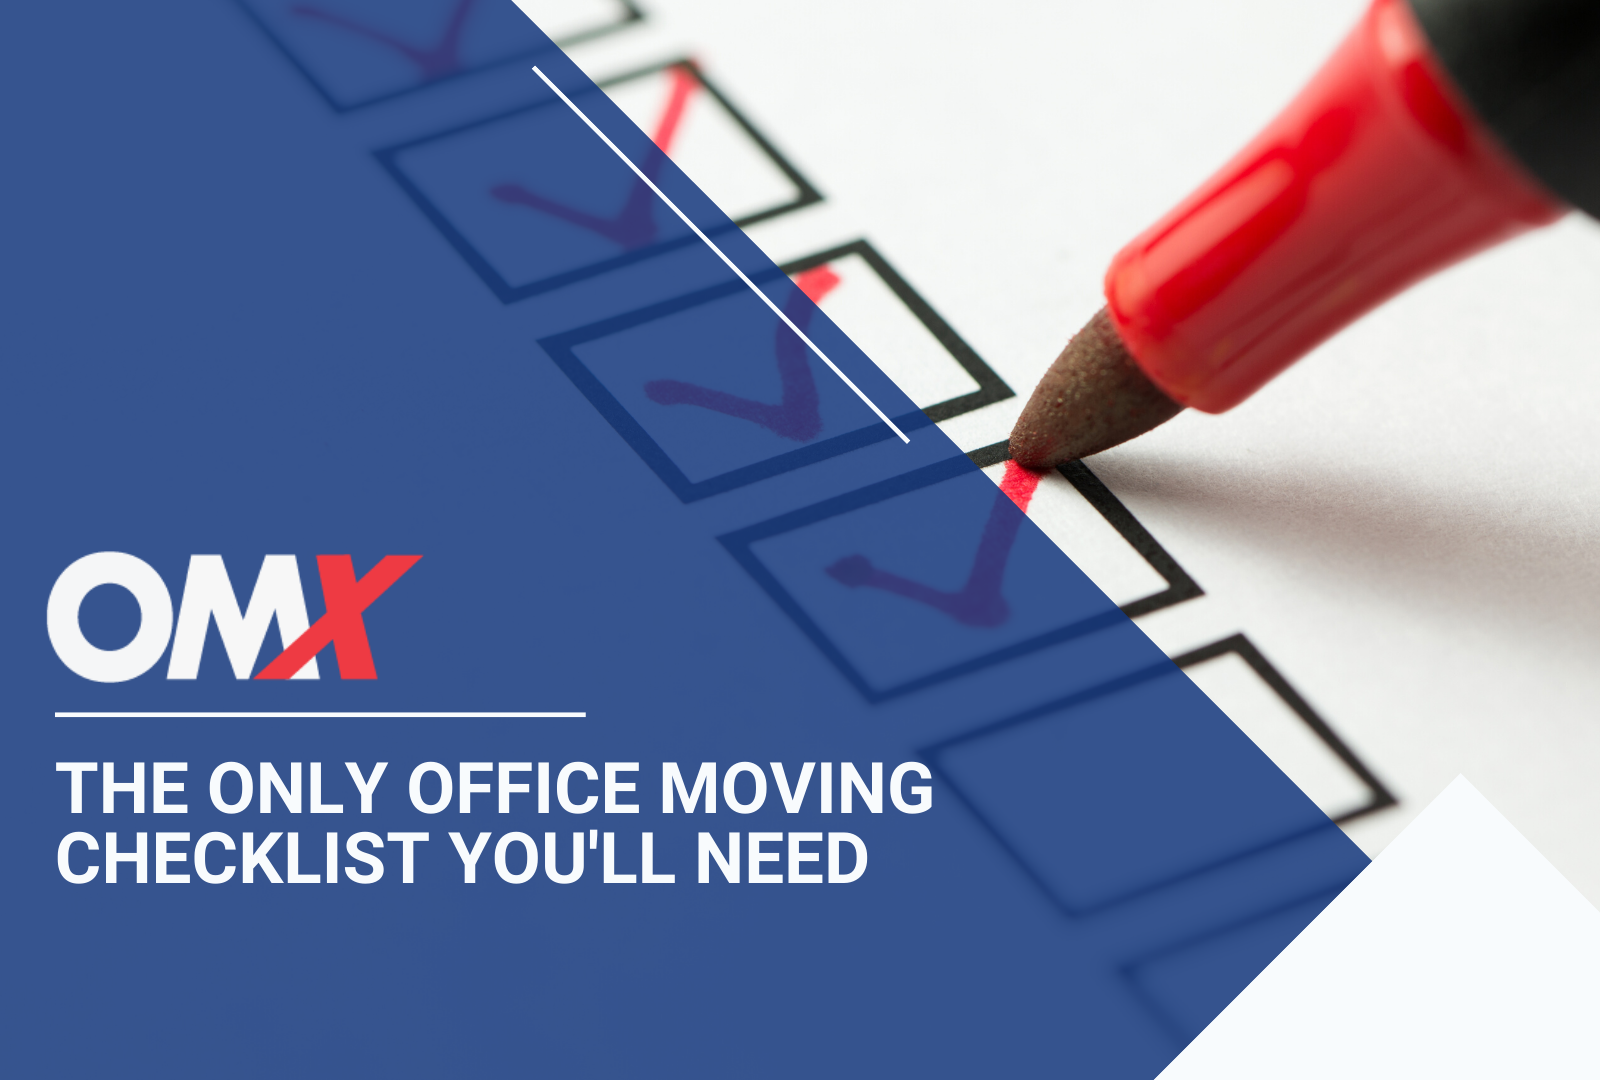 office move checklist